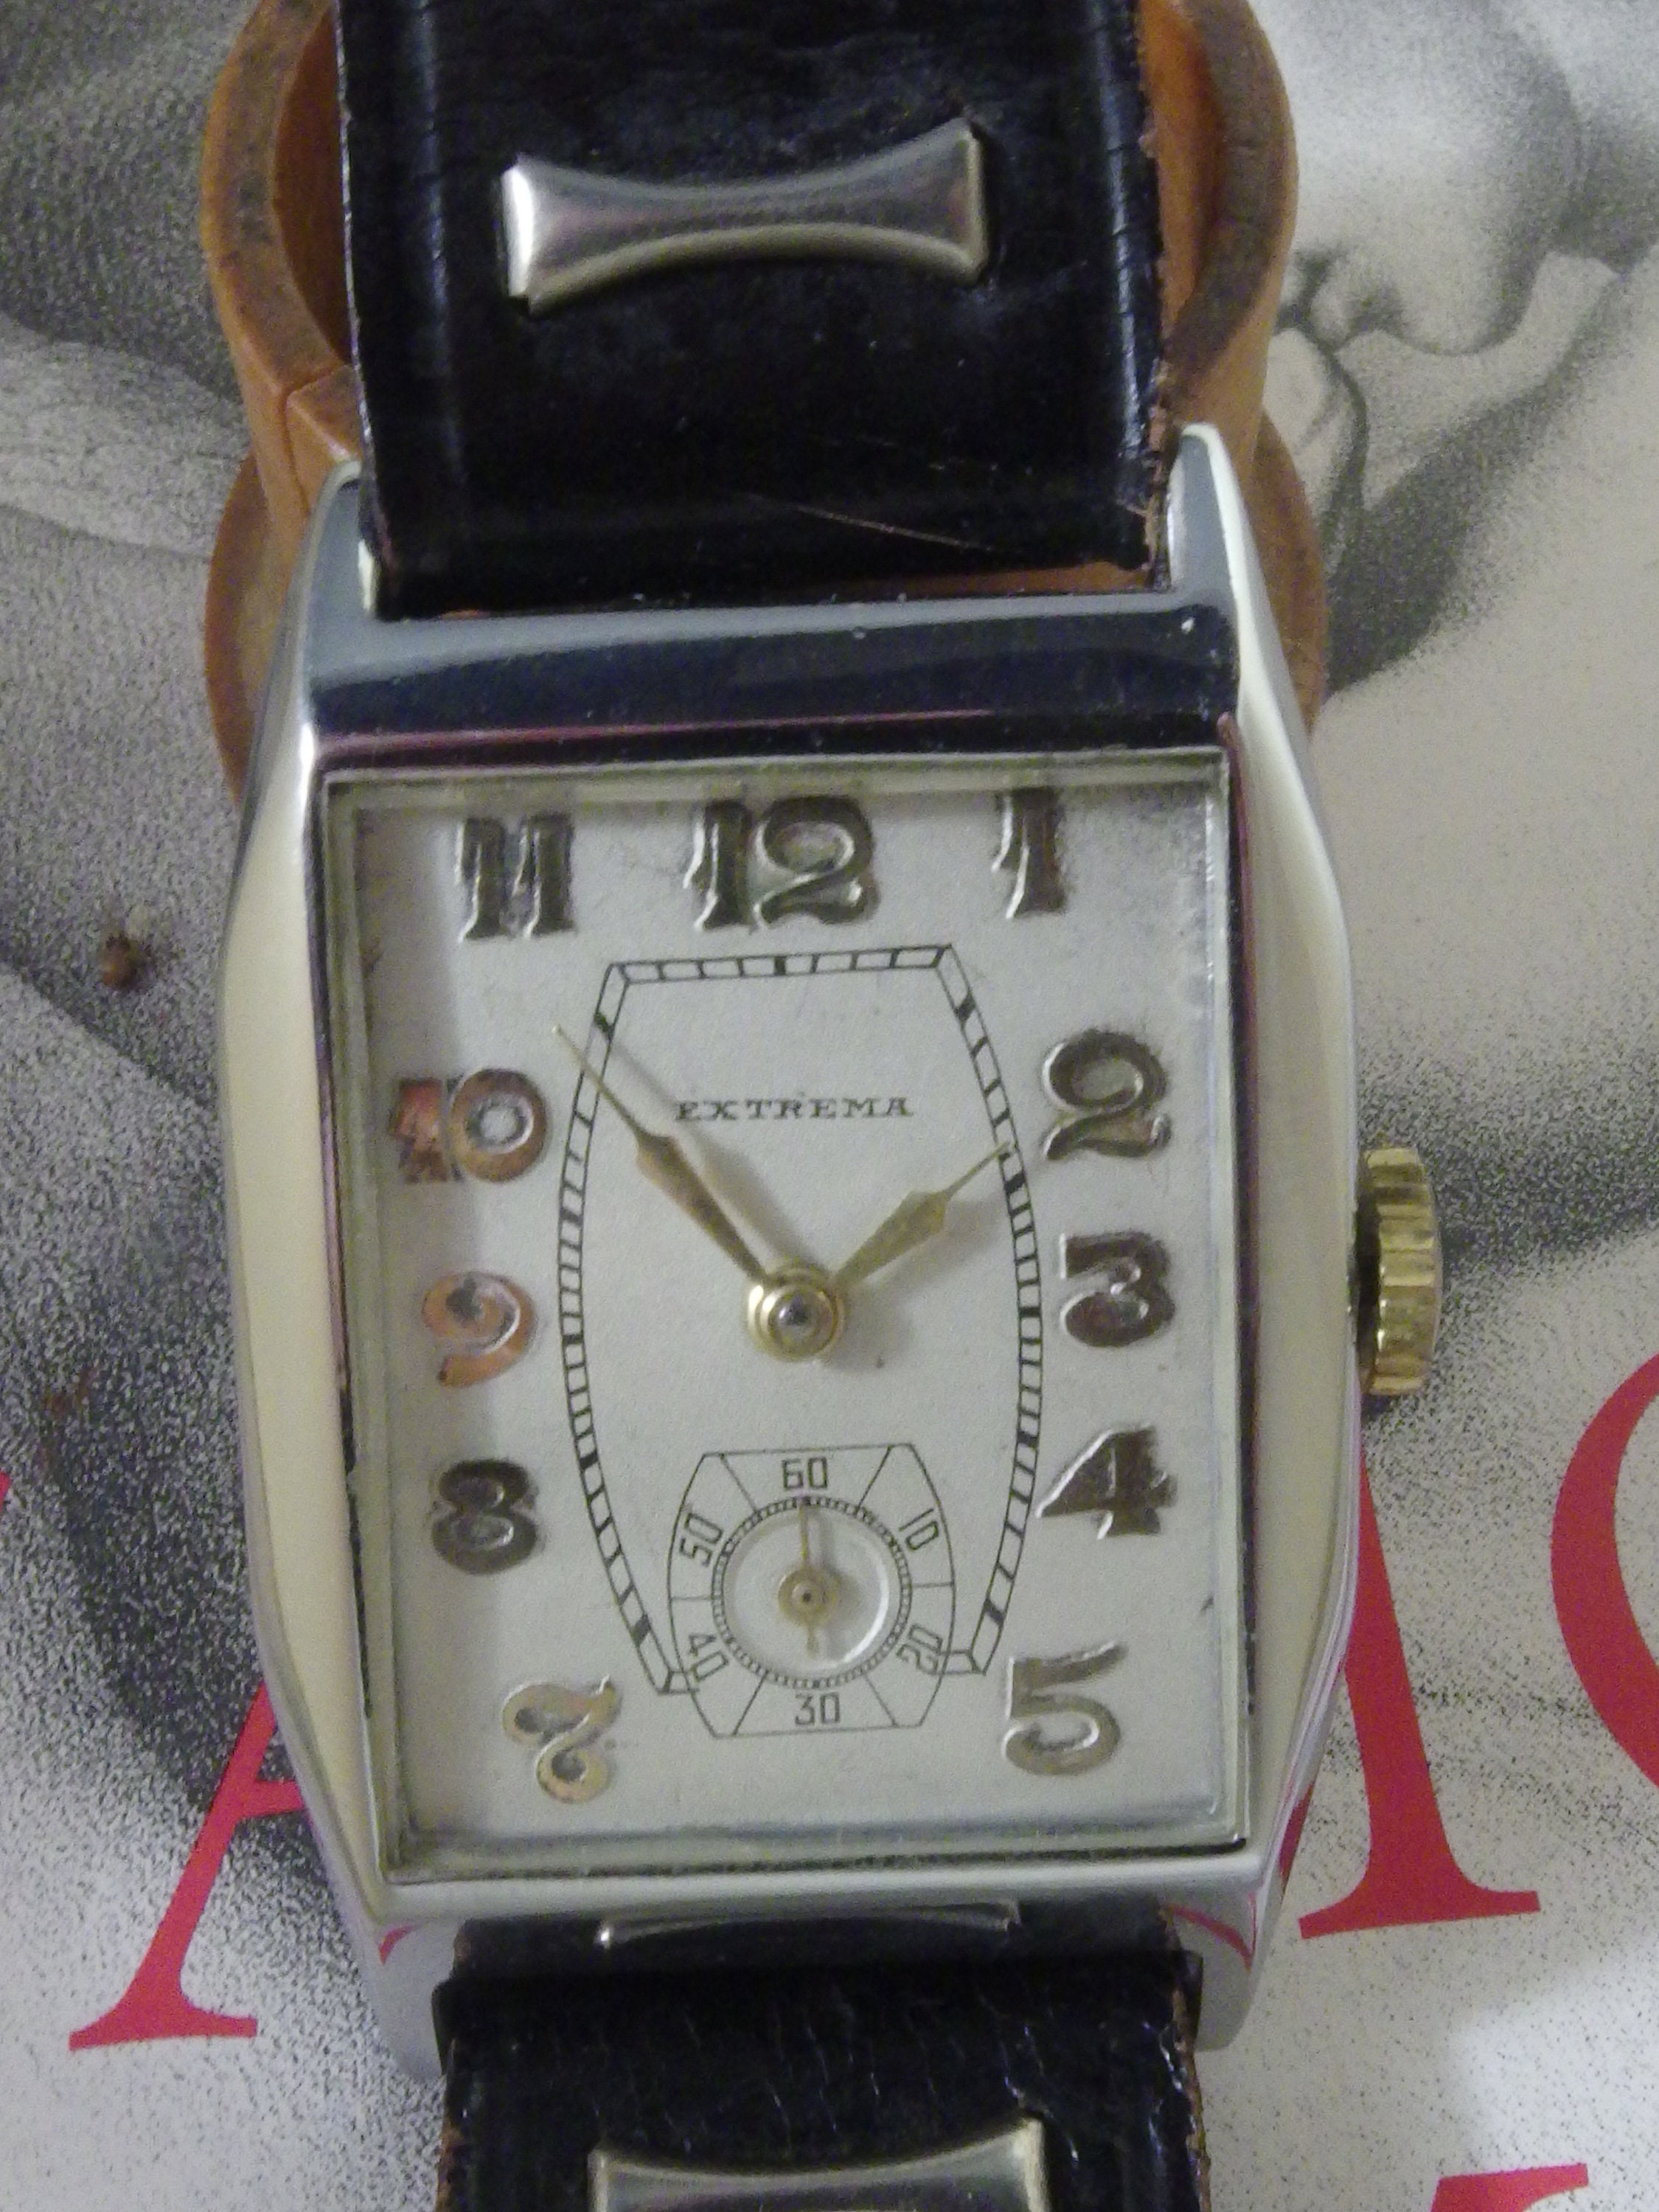 Montre bracelet femme, boitier en or 14ct, mécanique, 1920-30